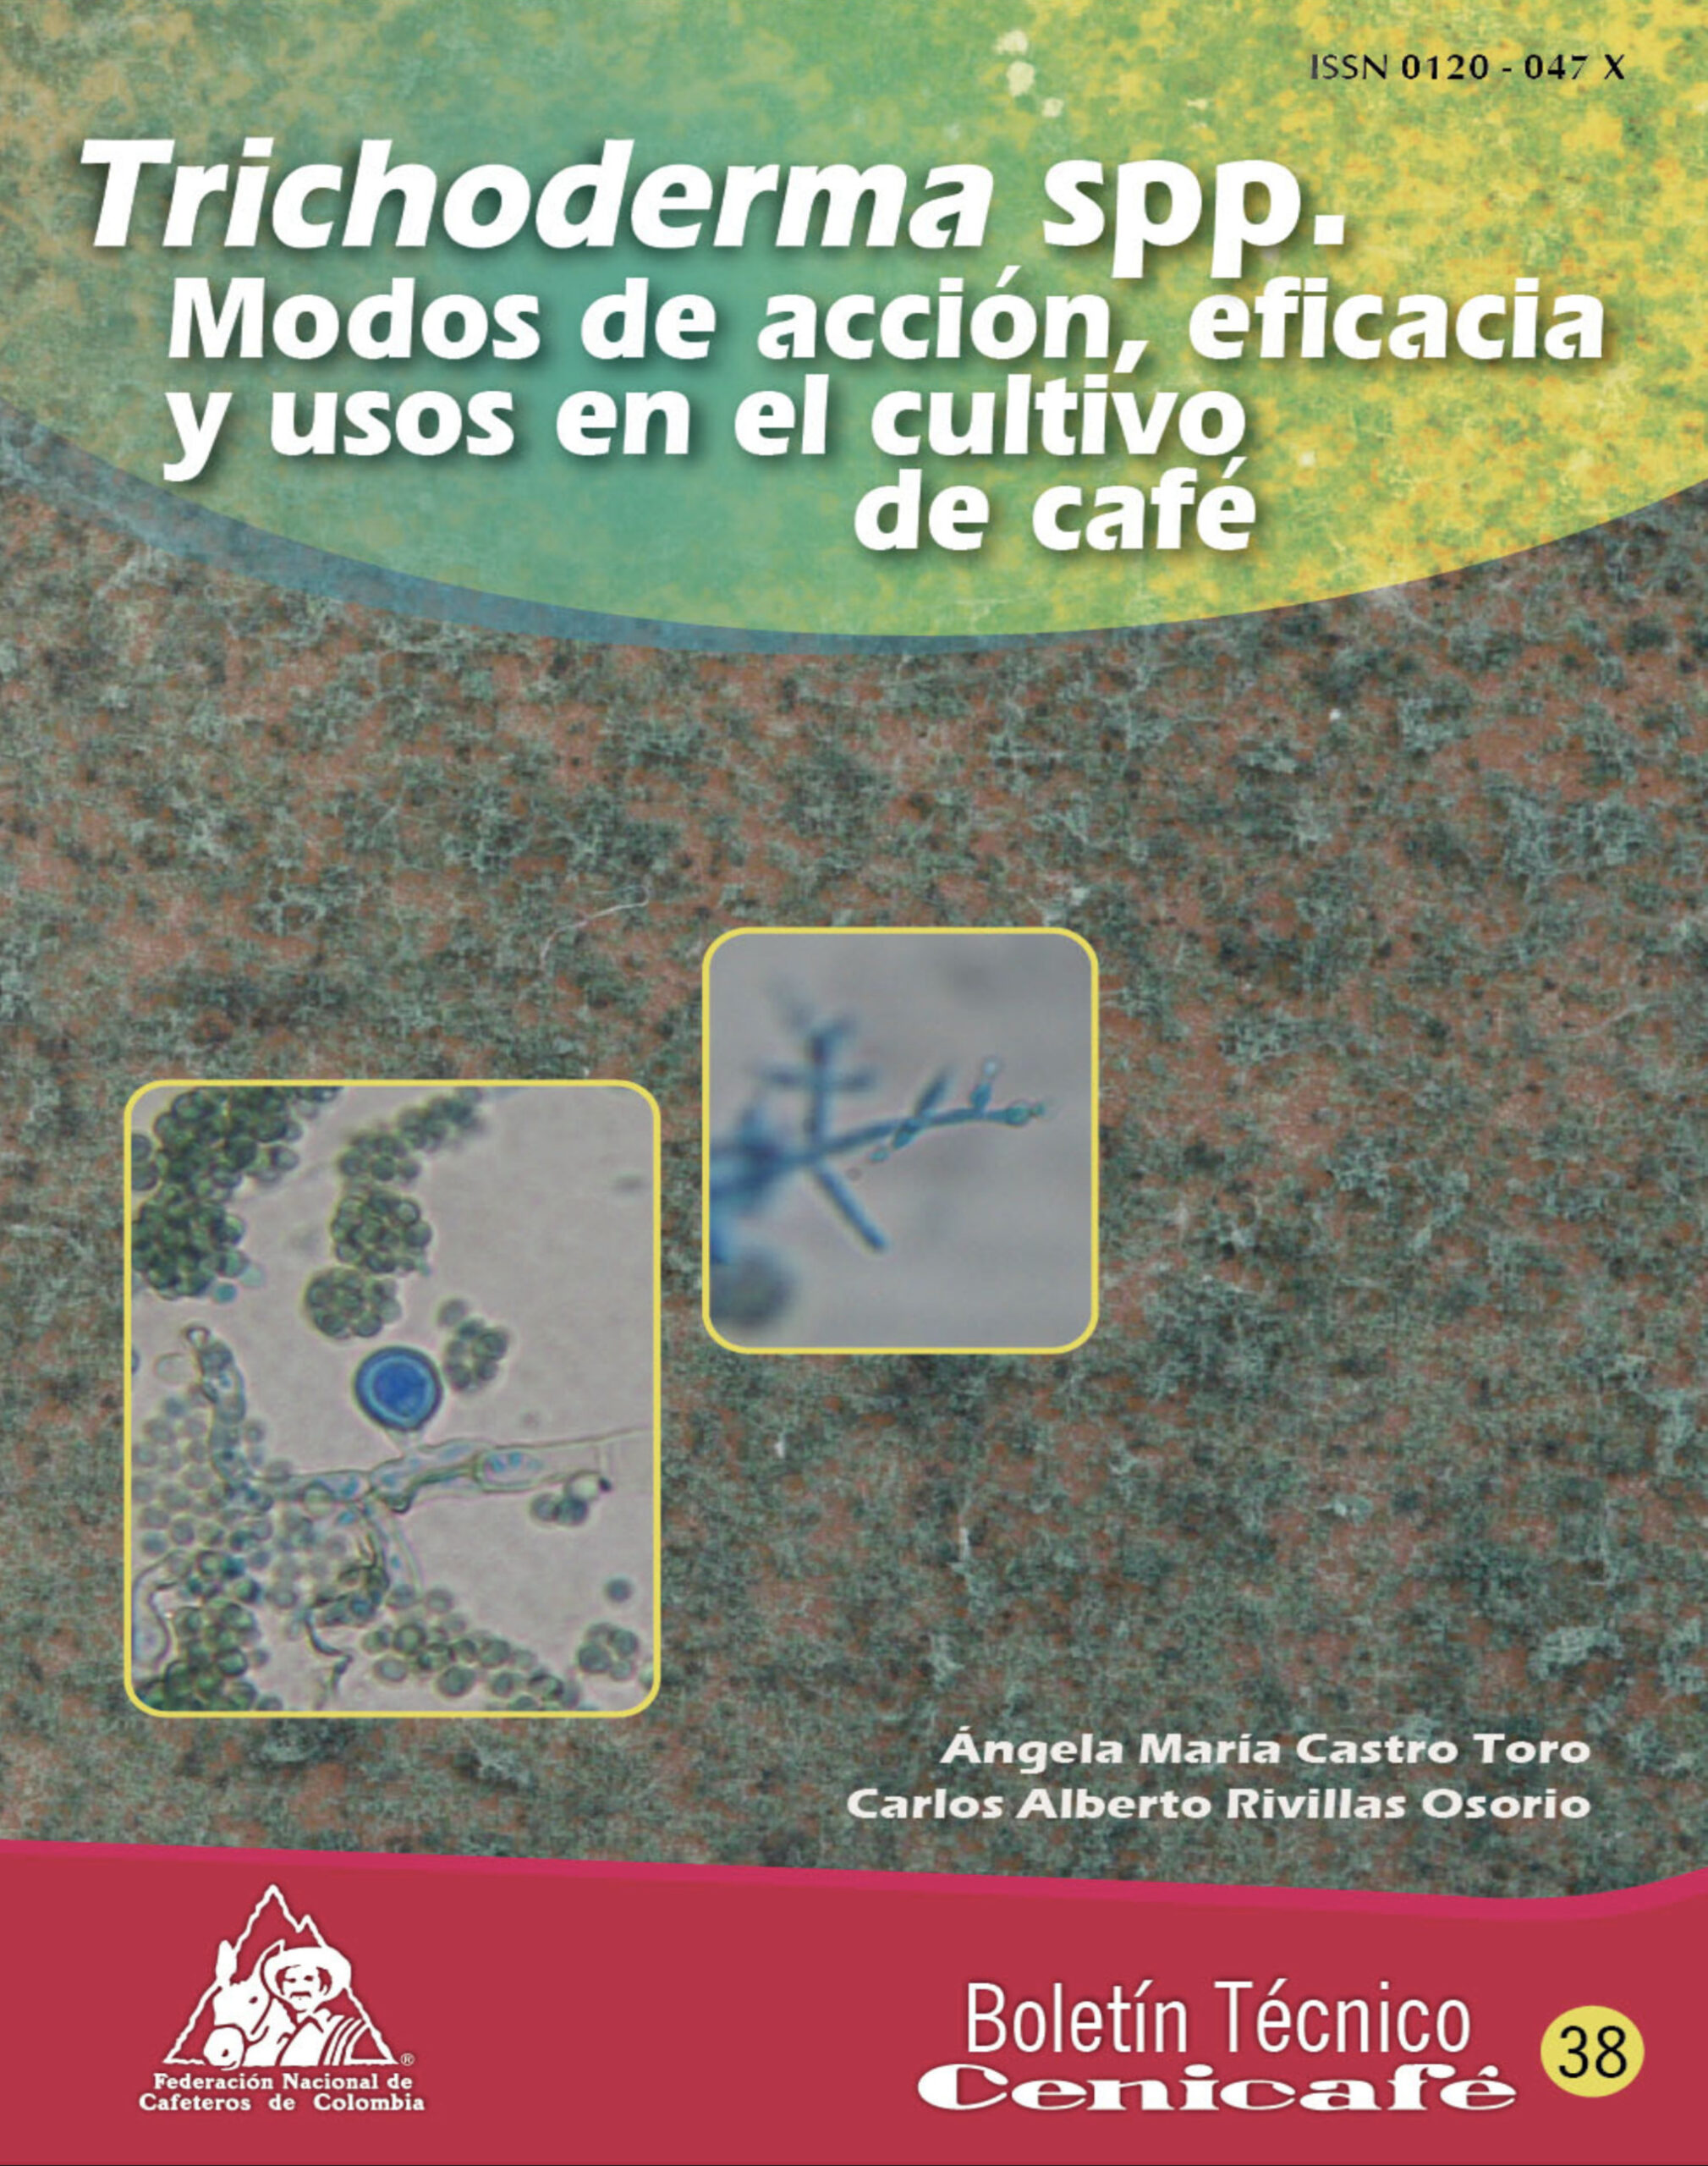 4 OK Trichoderma spp. Modos de Accion Usos y Eficacia en el cultivo de Cafe. Boletin 38